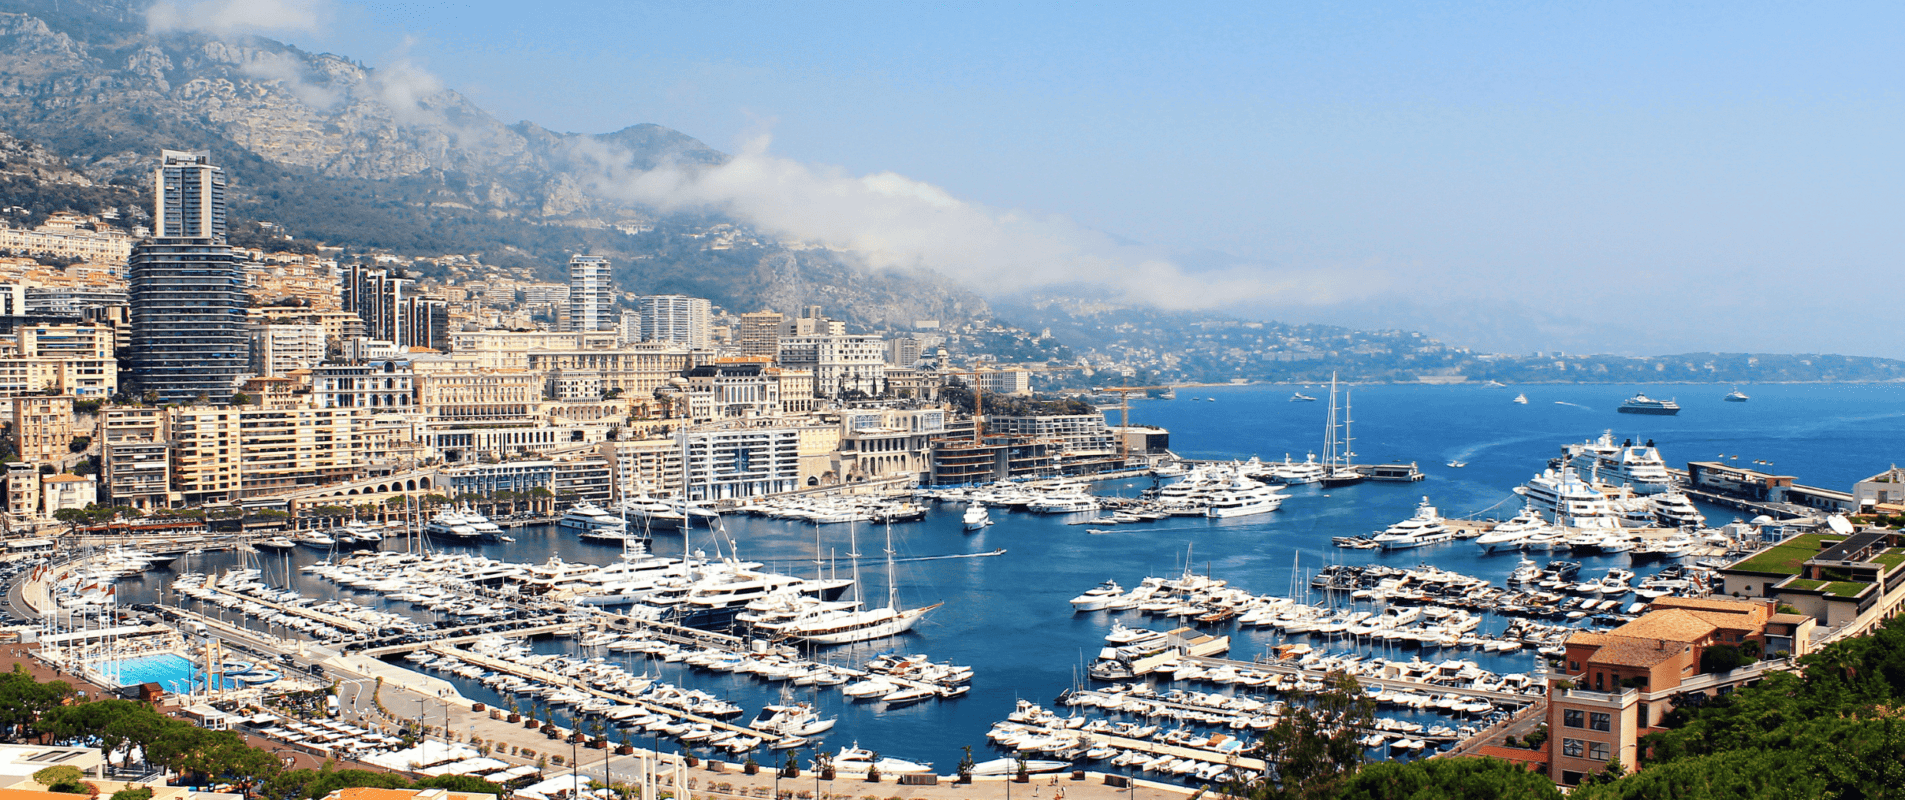 Striscione di benvenuto - Vista sul porto di Monaco